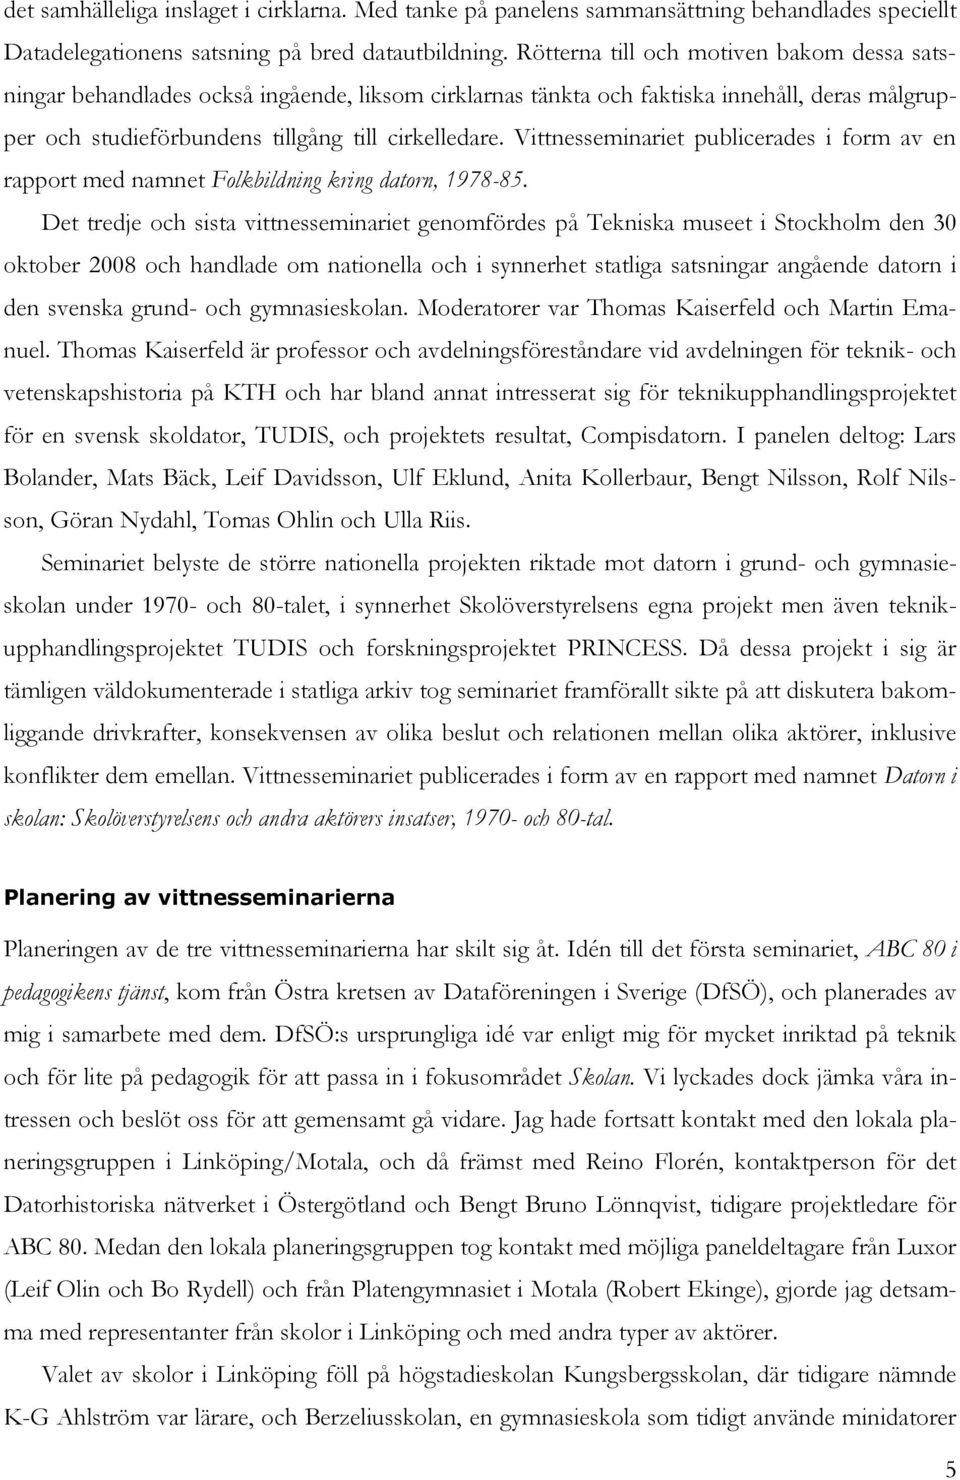 Vittnesseminariet publicerades i form av en rapport med namnet Folkbildning kring datorn, 1978-85.